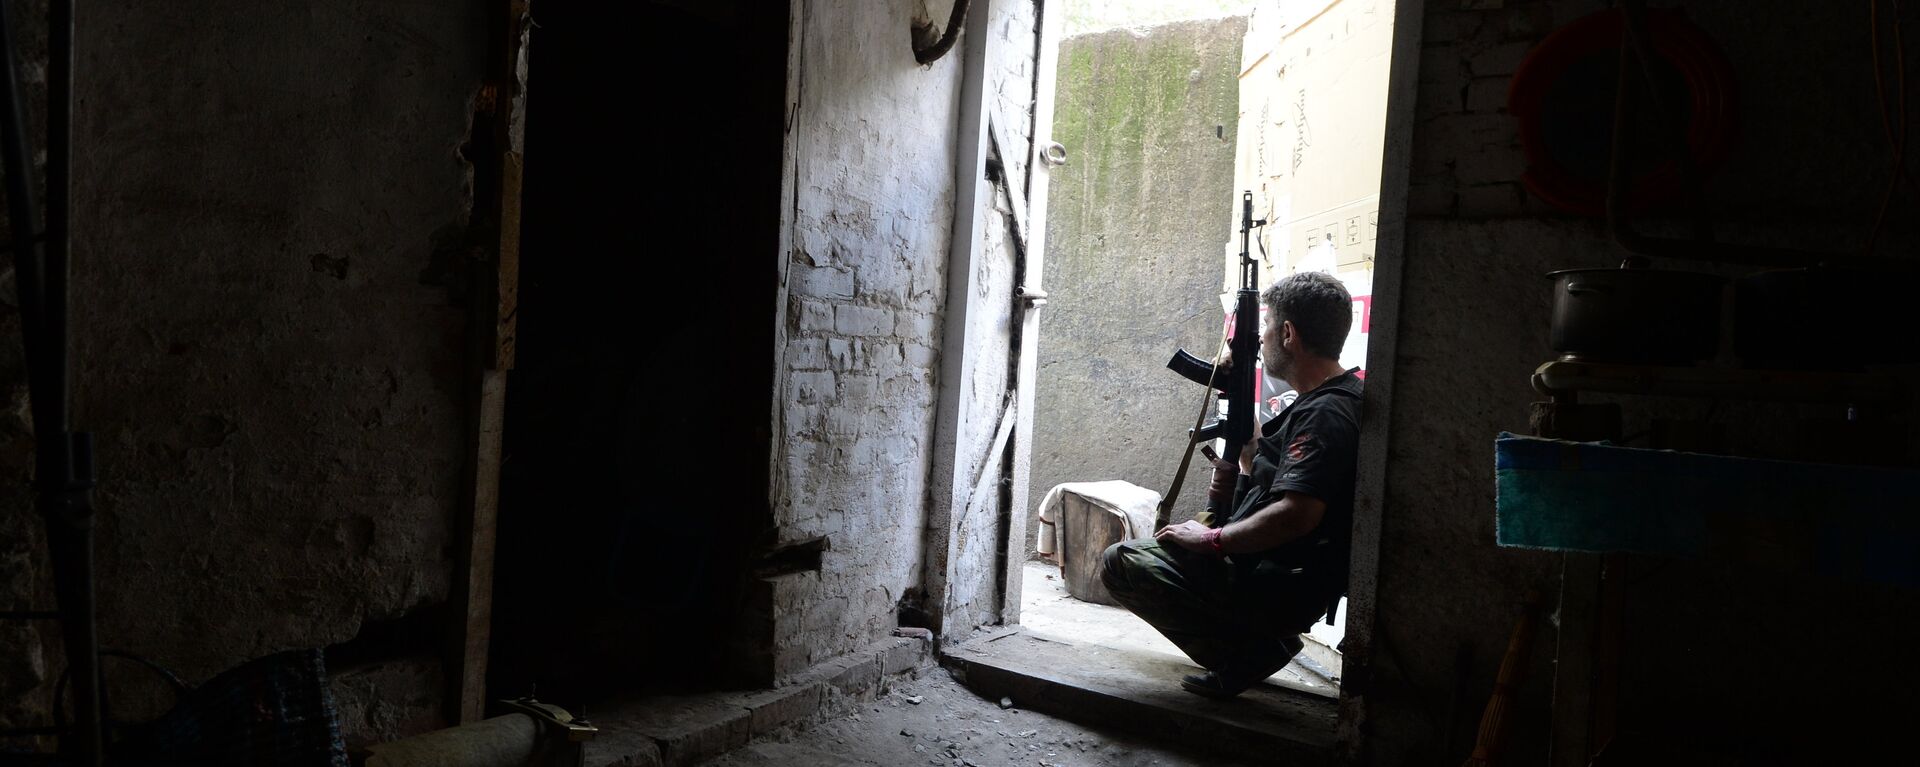 Ополченец в подвале жилого дома во время артиллерийского обстрела города украинской армией.Архивное фото. - Sputnik Абхазия, 1920, 12.11.2021